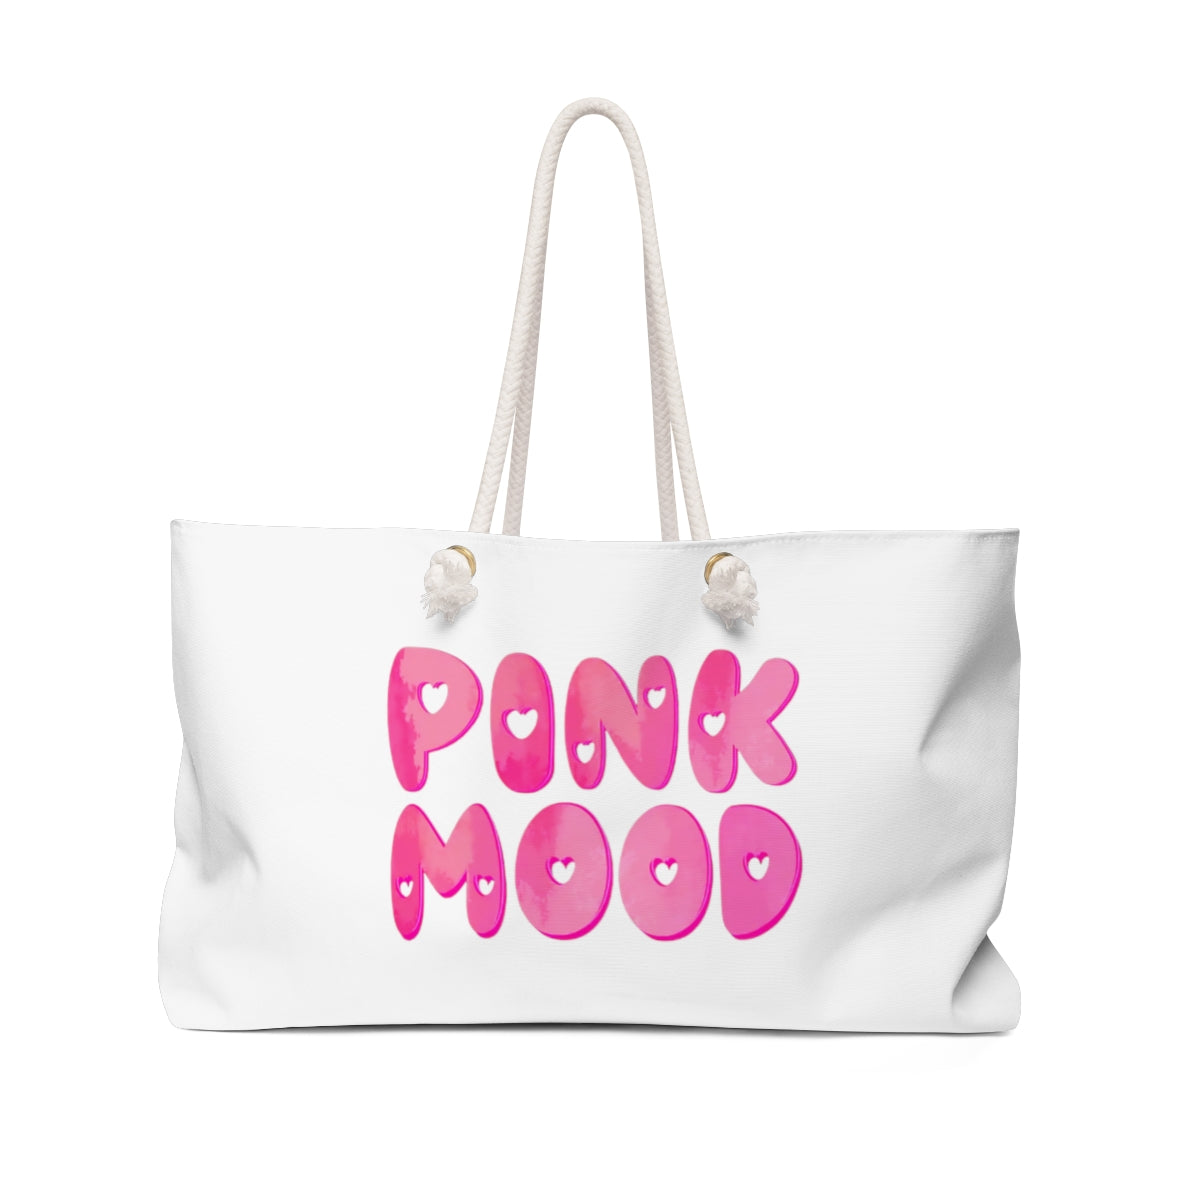 Pink Mood Weekender Bag